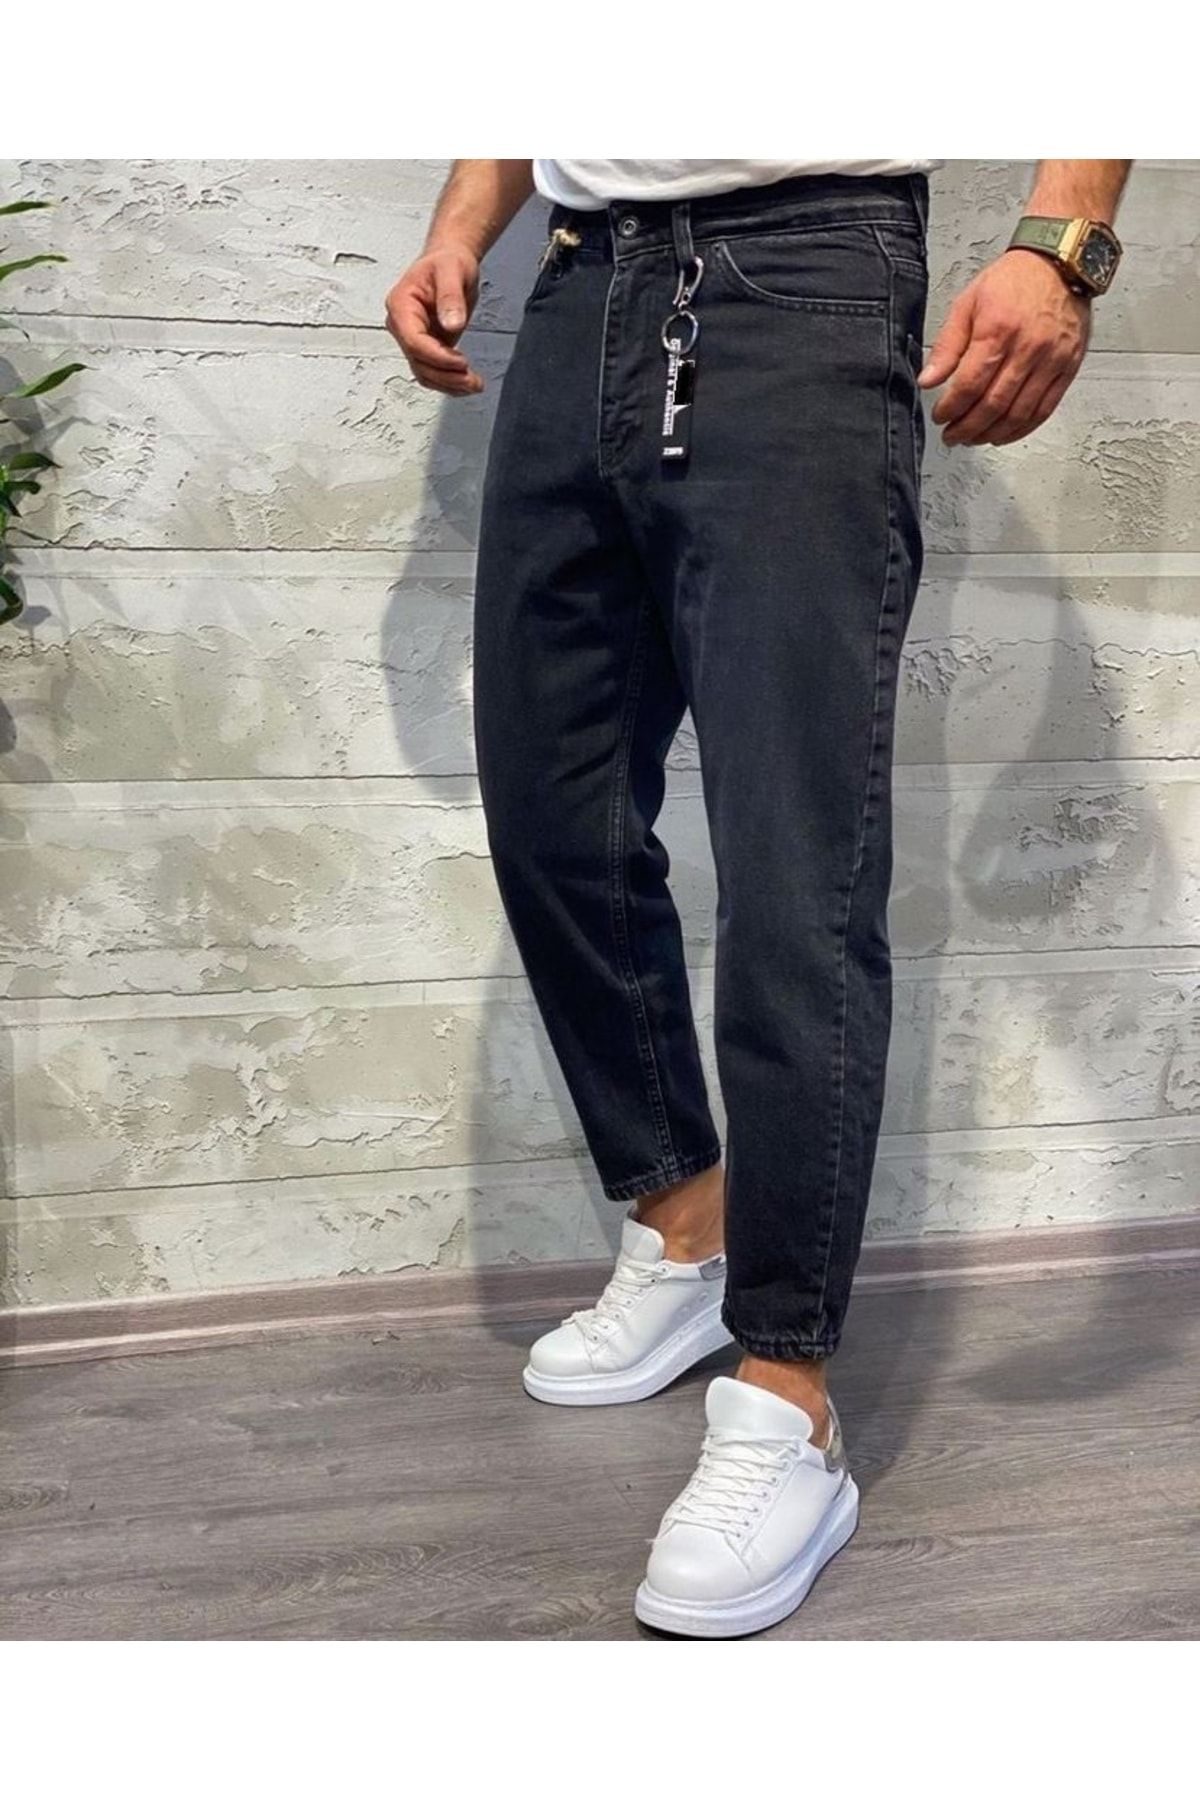 Oliggopol Erkek Siyah Boyfriend Jeans Kot Pantolon